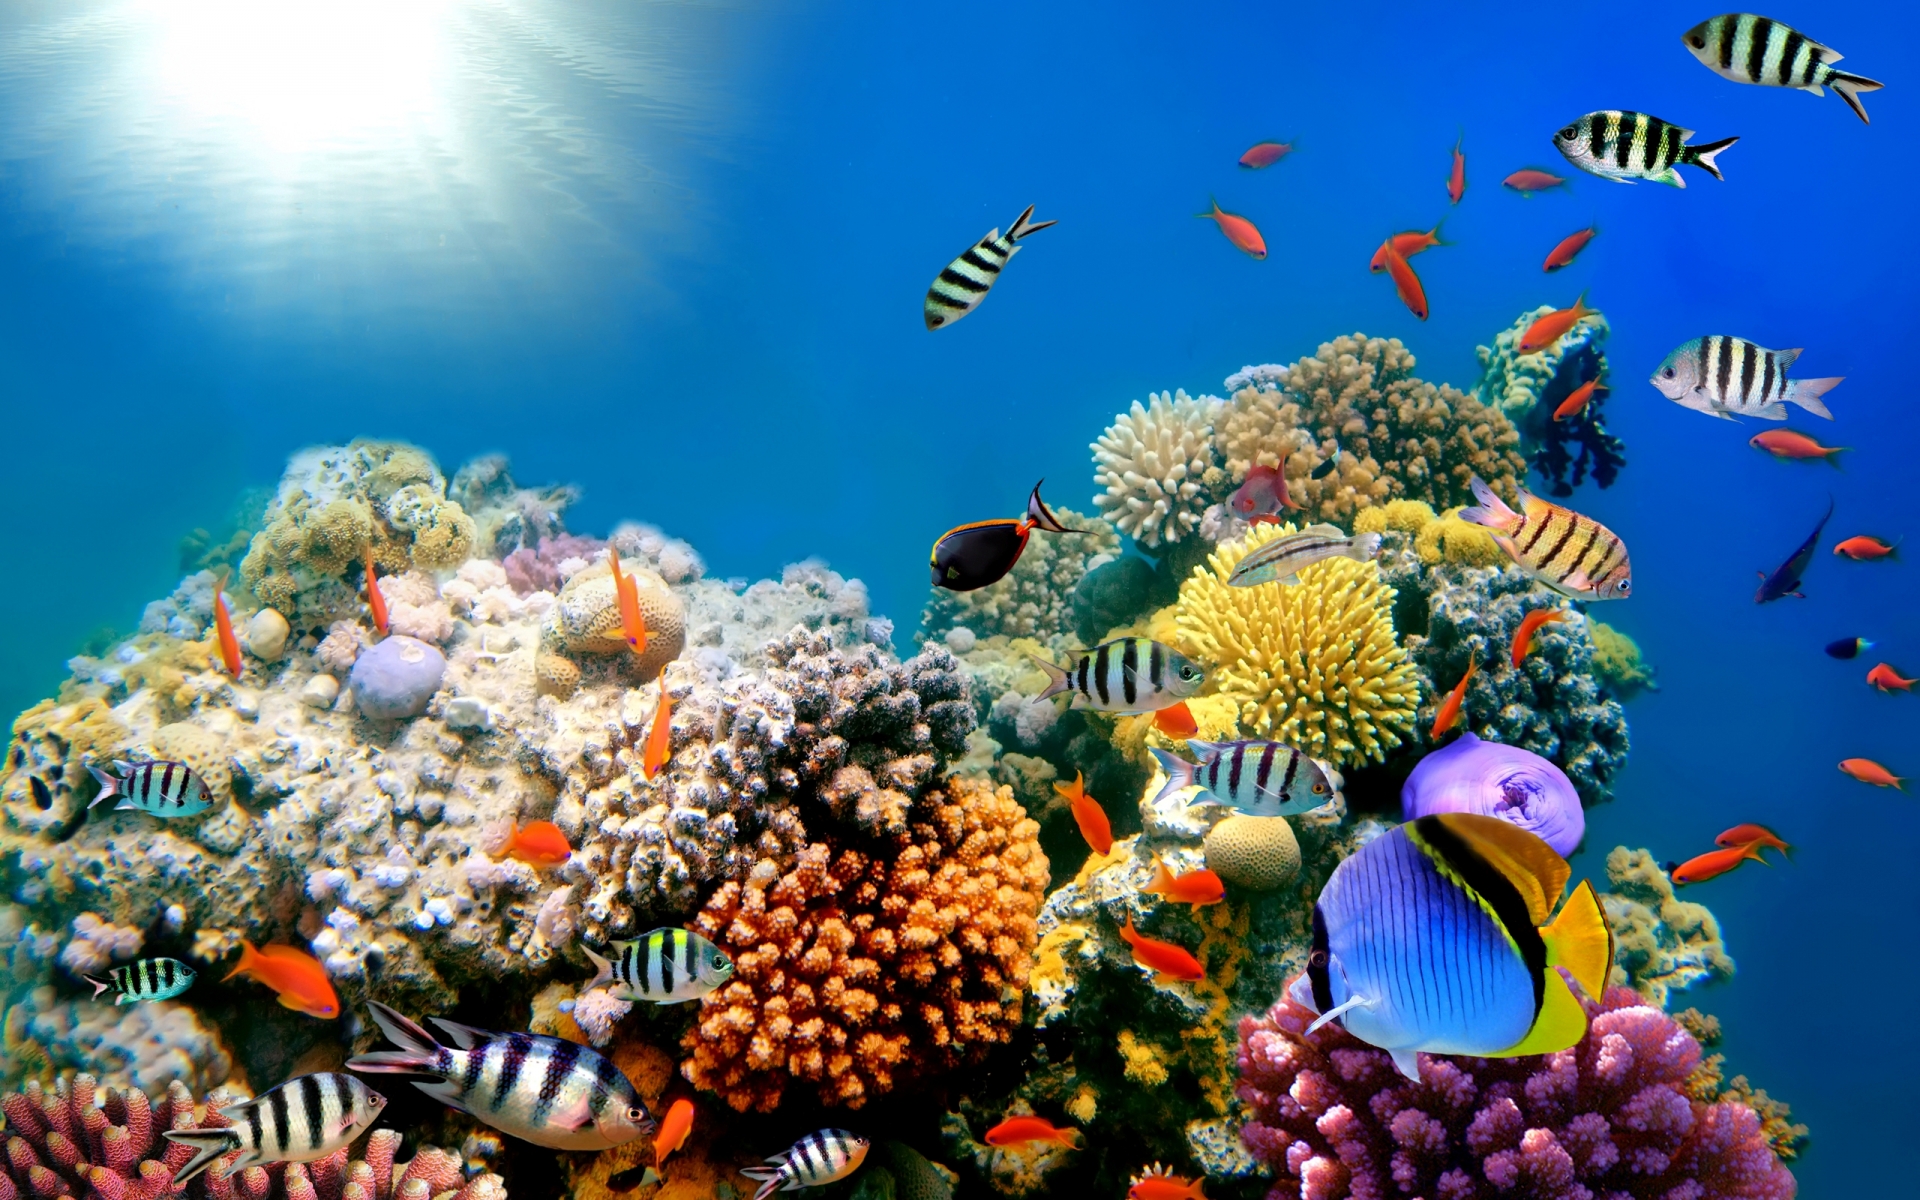  Desktop Backgrounds chillcovercom Underwater Ocean Coral Free Desktop